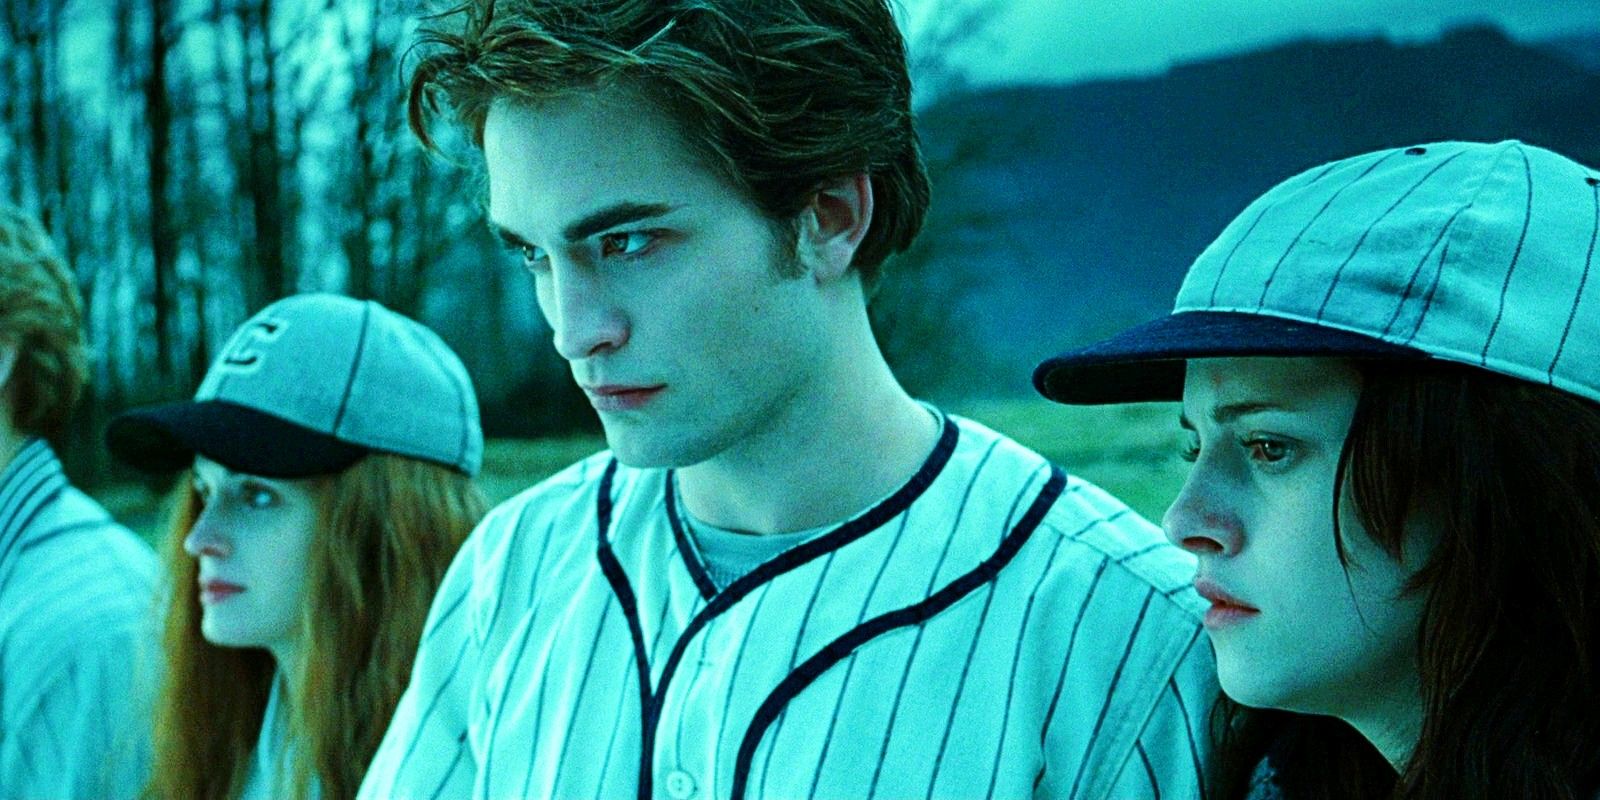 Elizabeth Reaser, Robert Pattinson and Kristen Stewart in Twilight